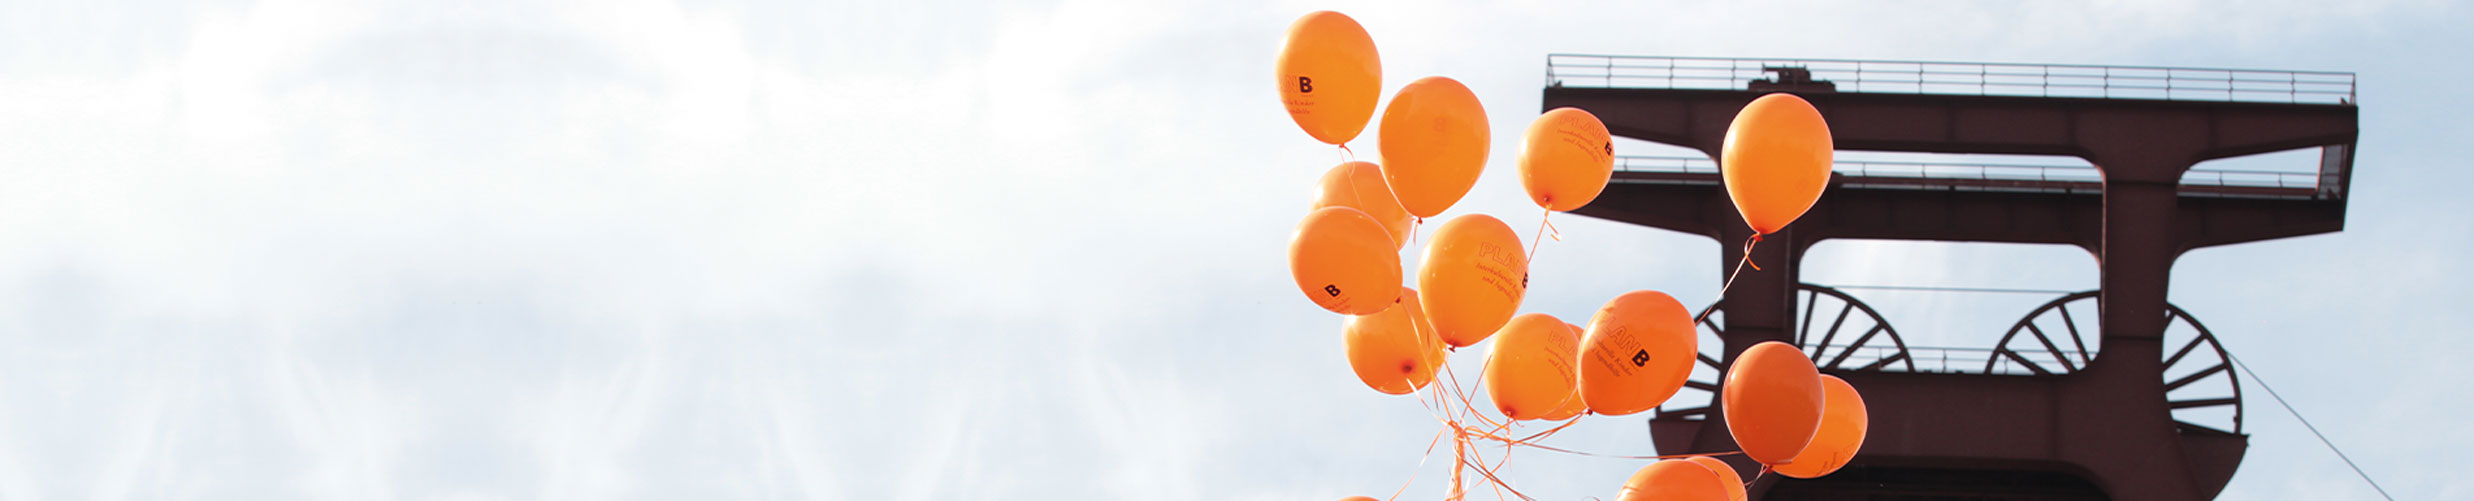 Zollverein Förderturn und orangene PLANB-Luftballons